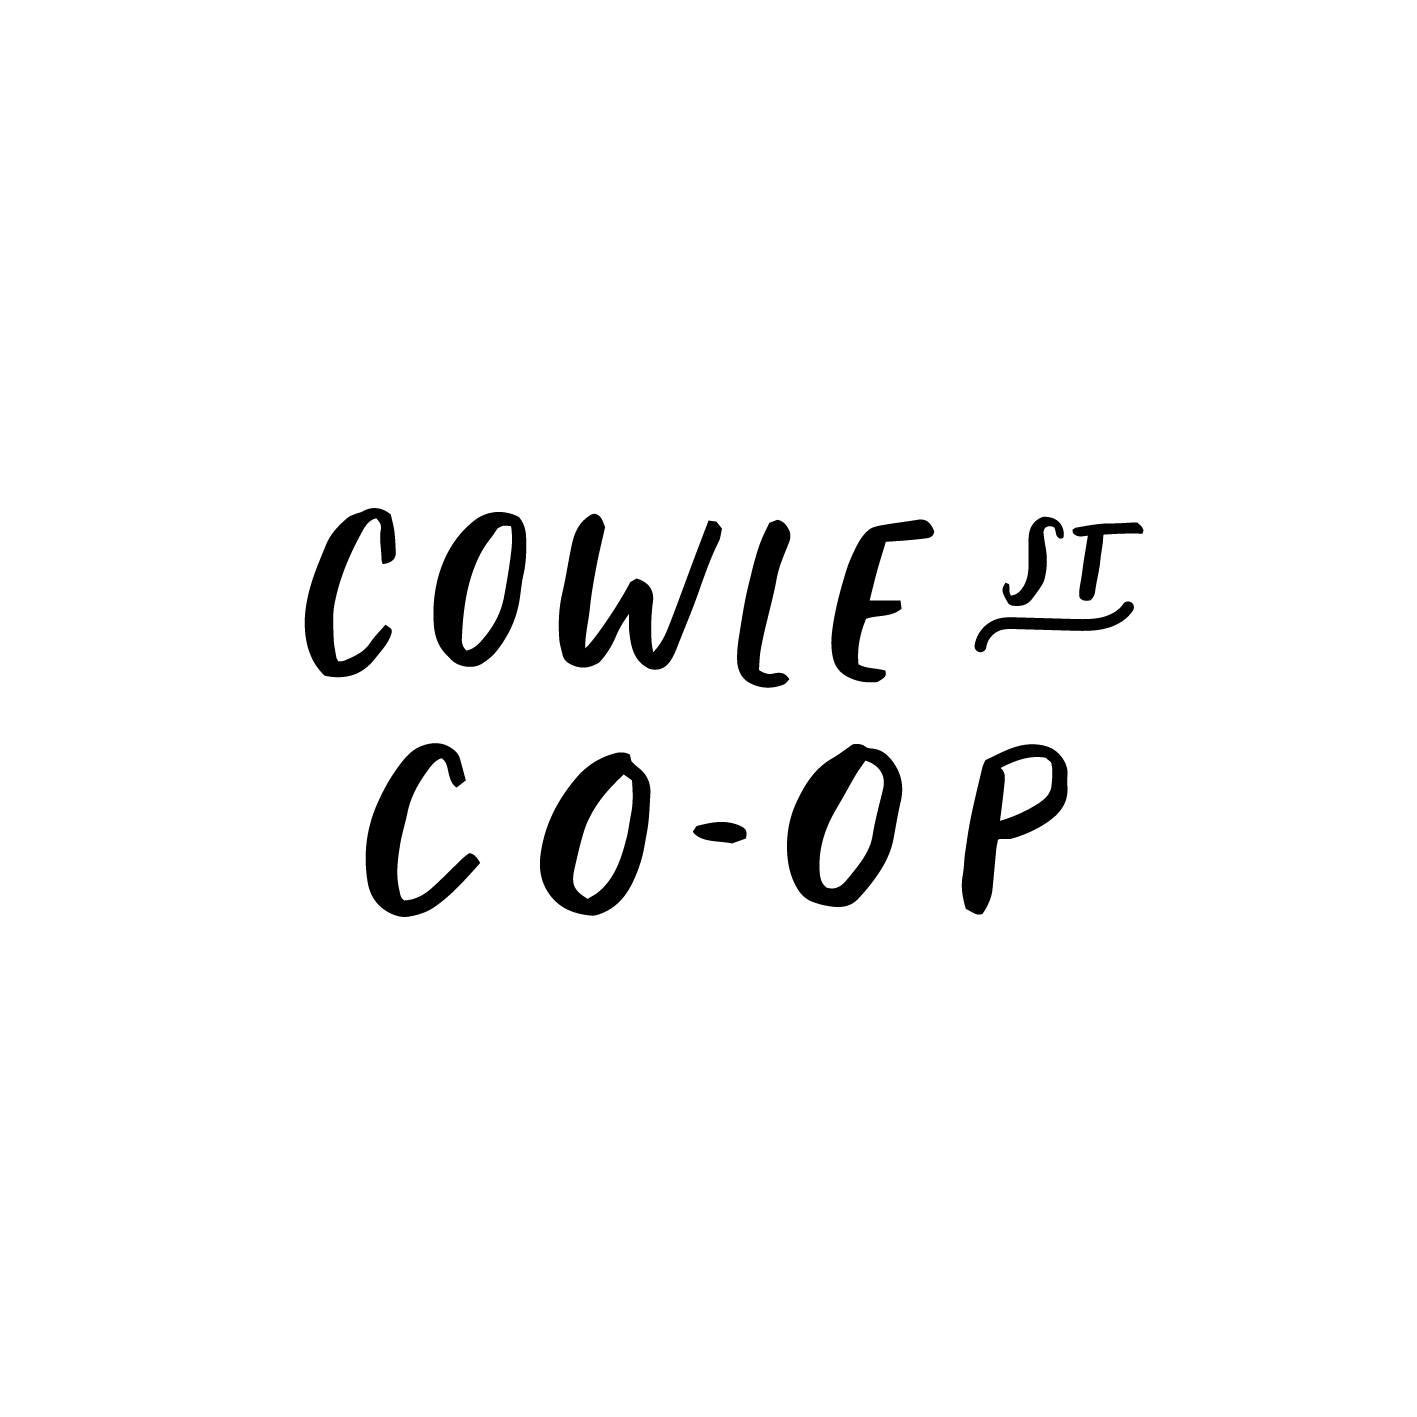 CowleStCoop-logo-insta-01.jpg